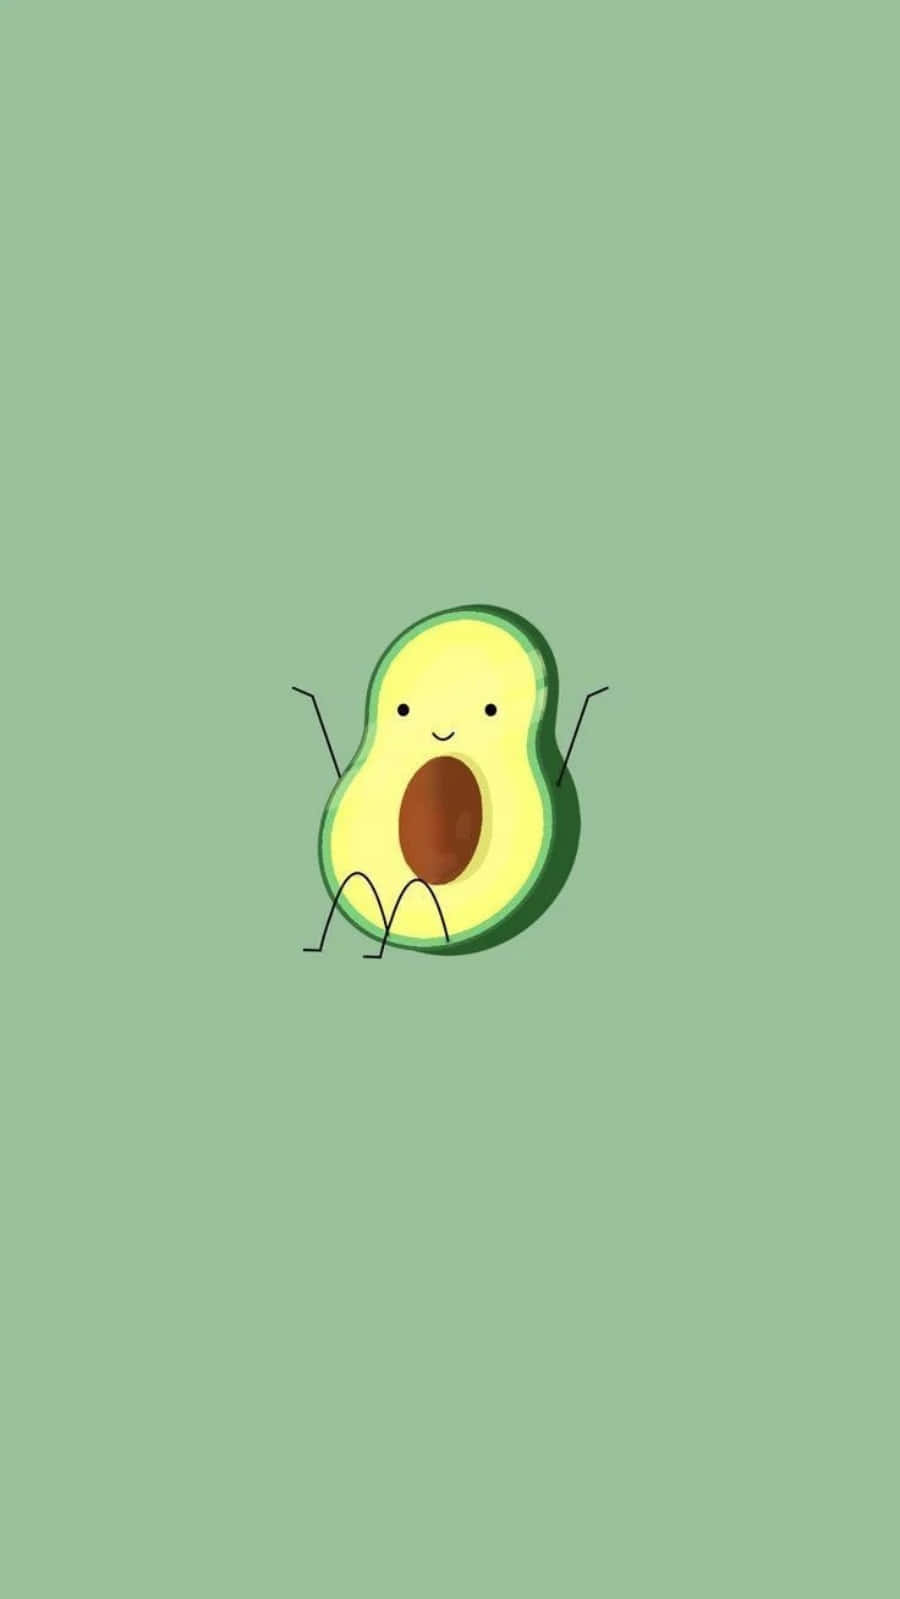 Enjoy a delicious avocado